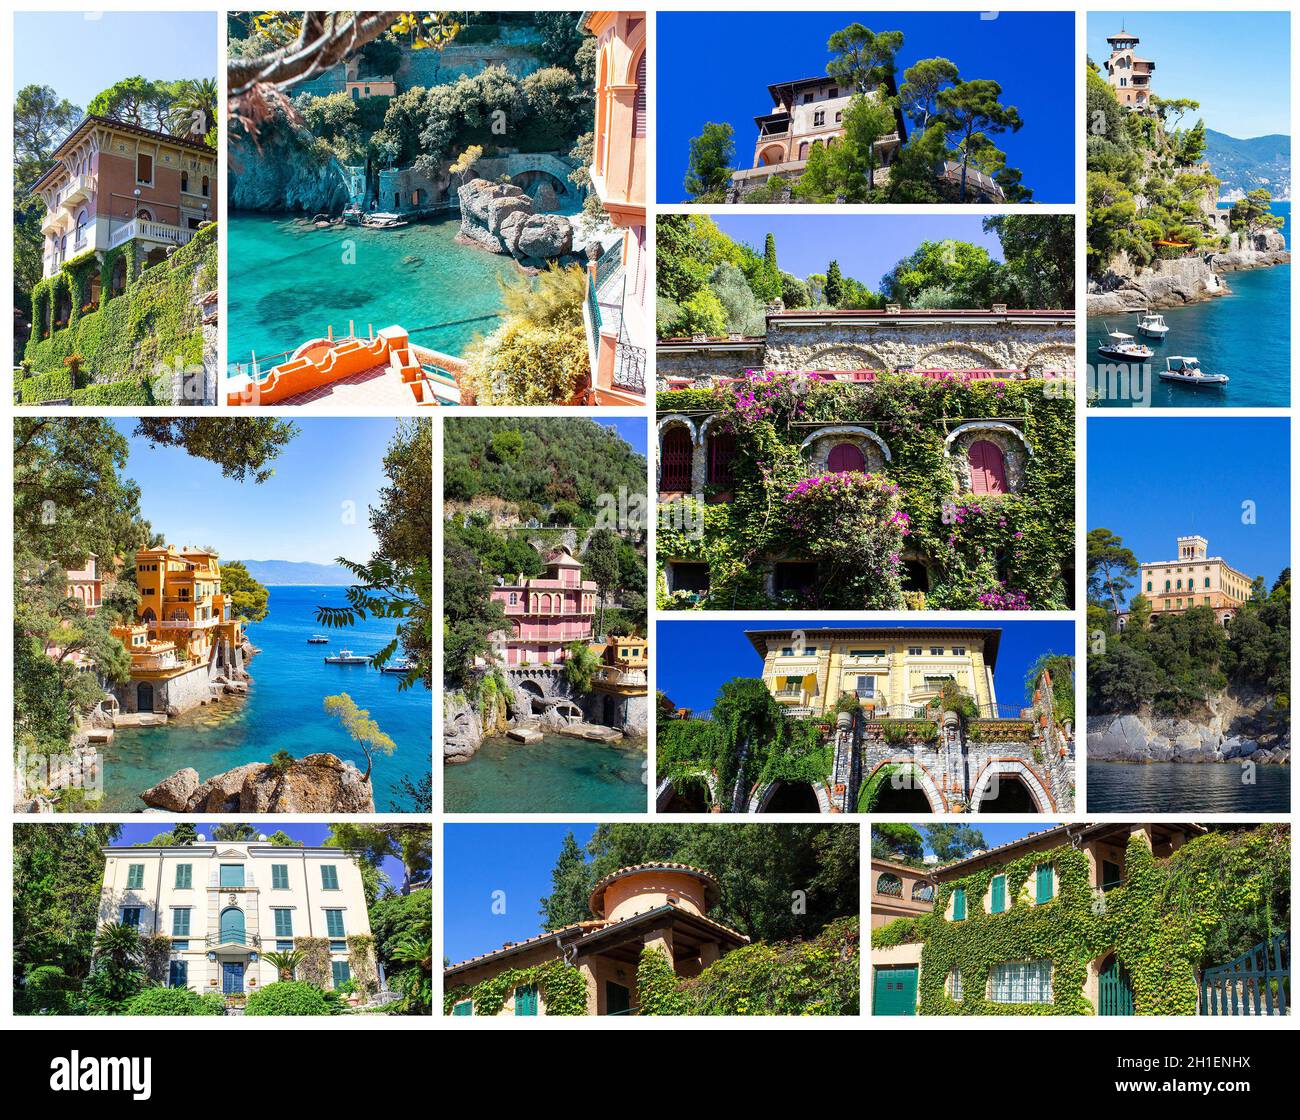 Collage sur la magnifique baie avec des villas colorées à Portofino en Italie Banque D'Images